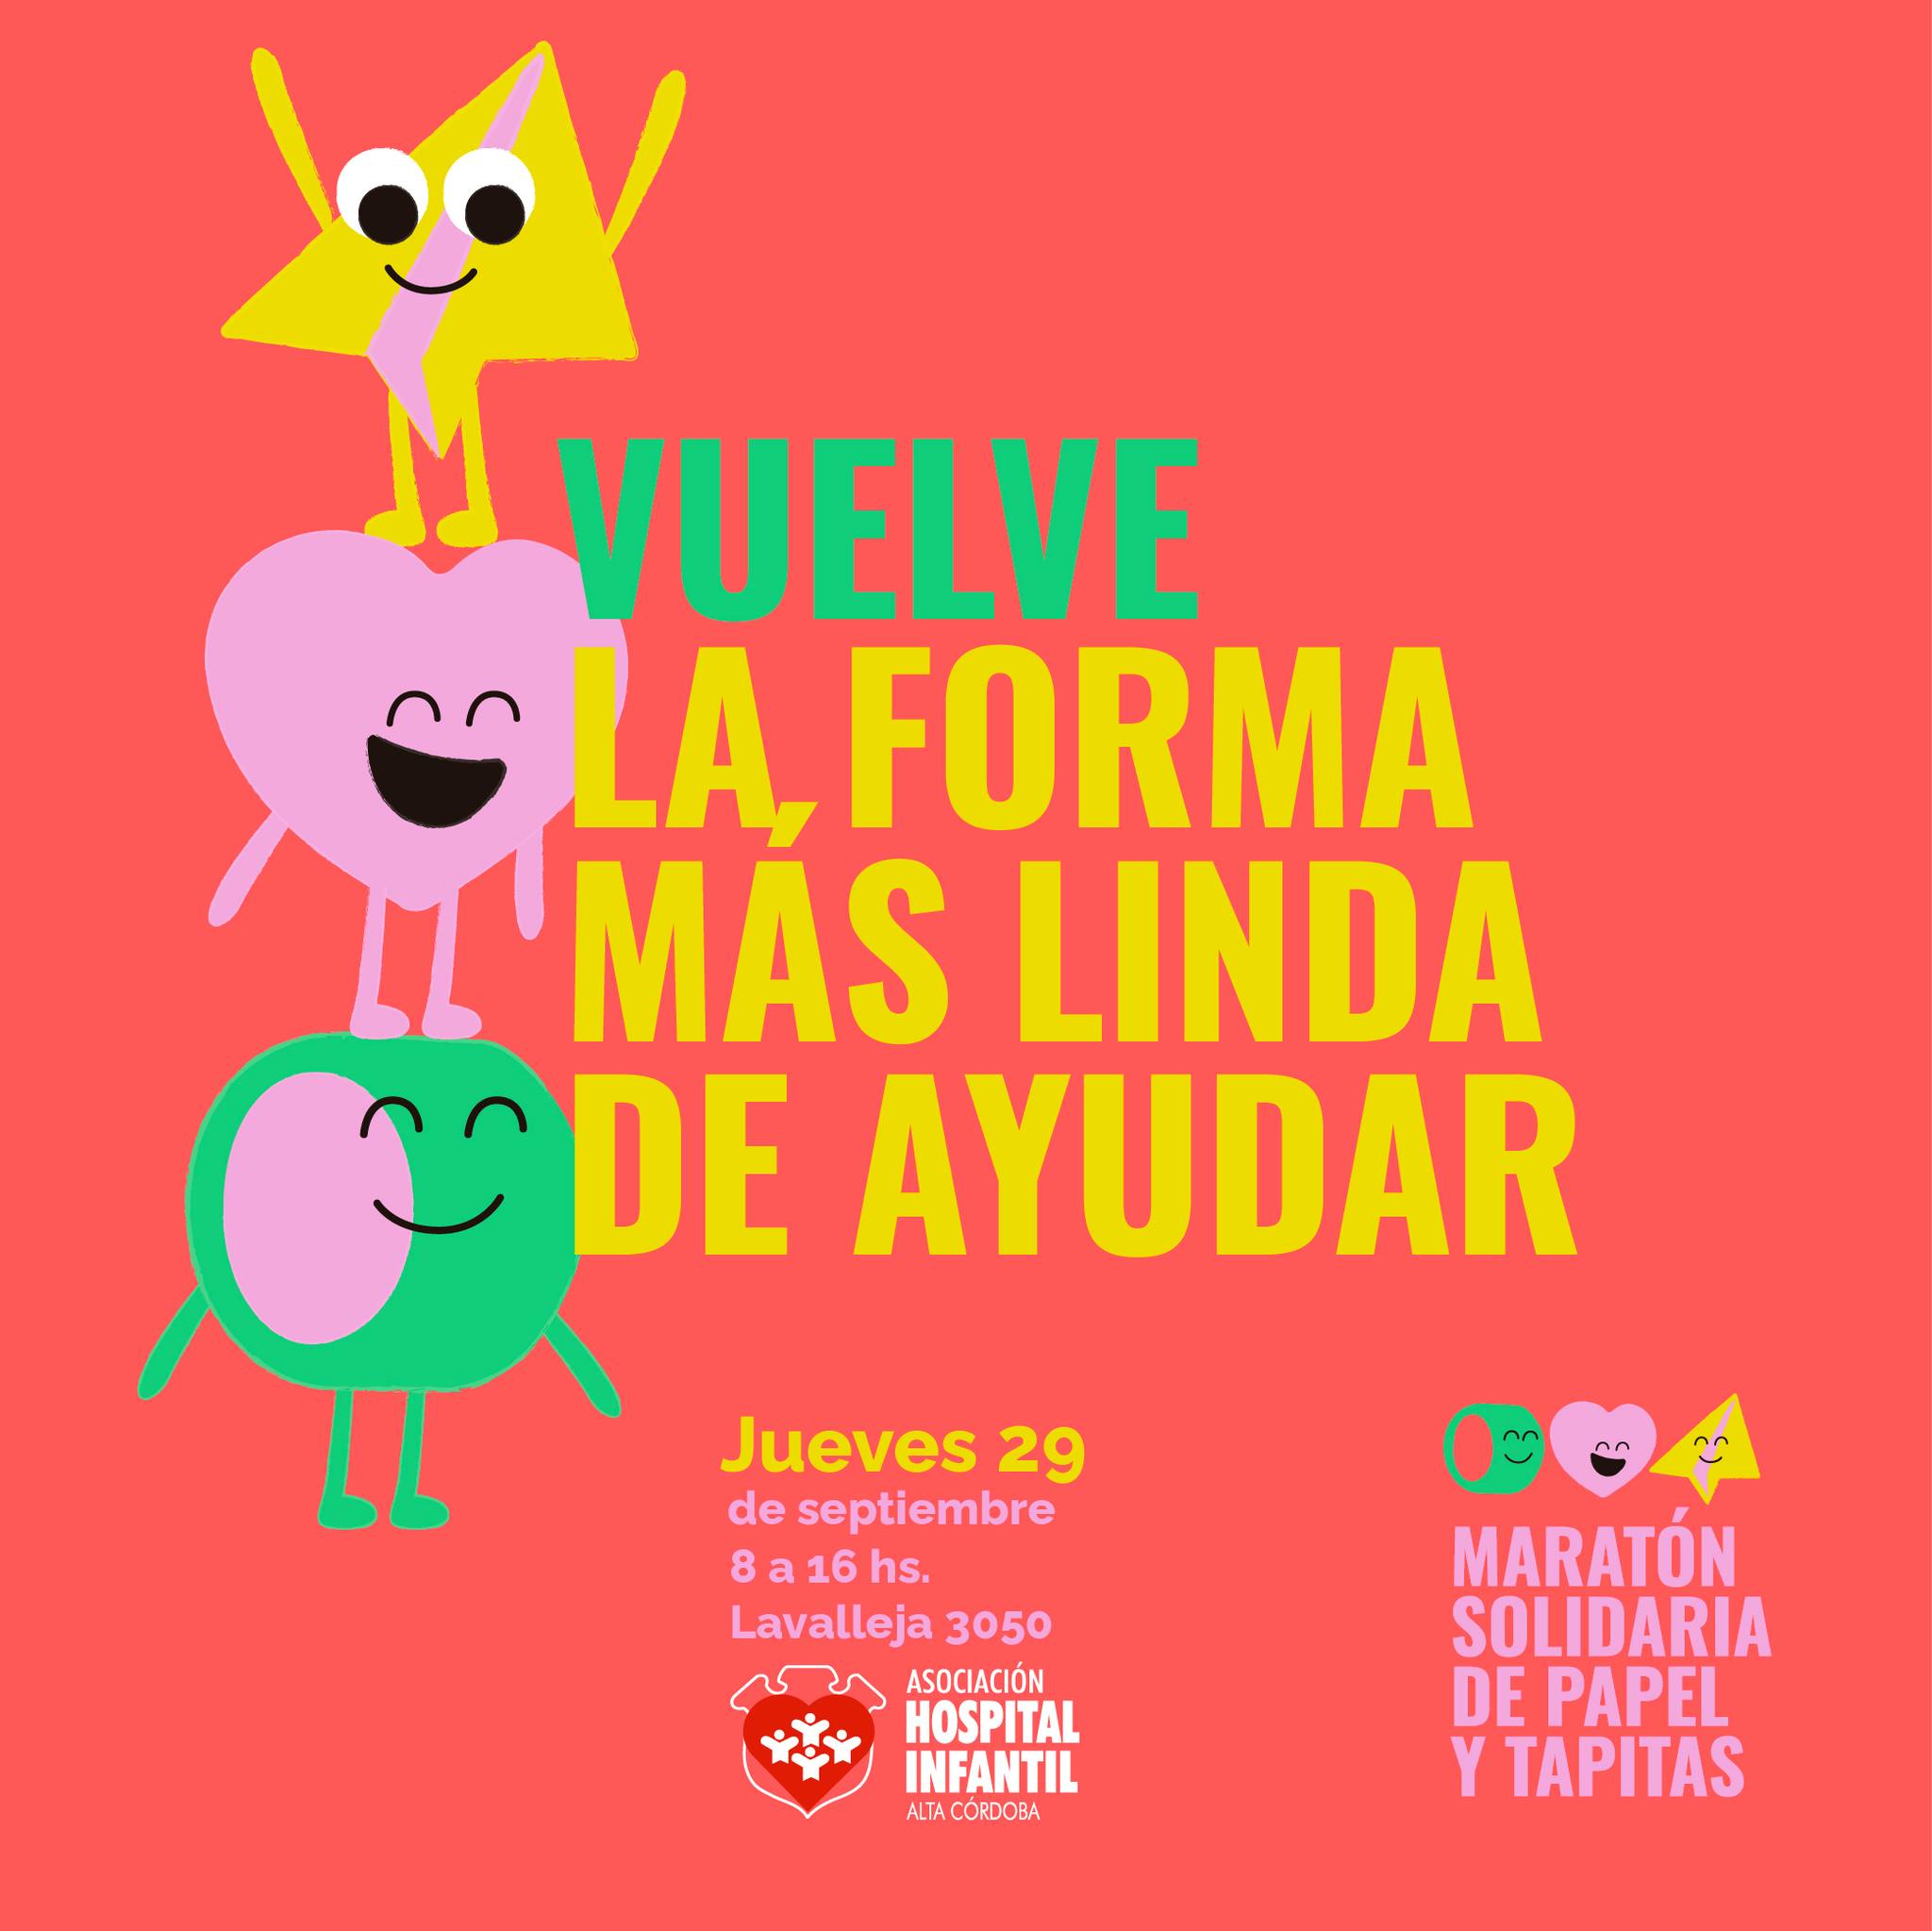 Se viene una nueva edición de la "Maratón solidaria de papel y tapitas" de Córdoba | Canal Showsport